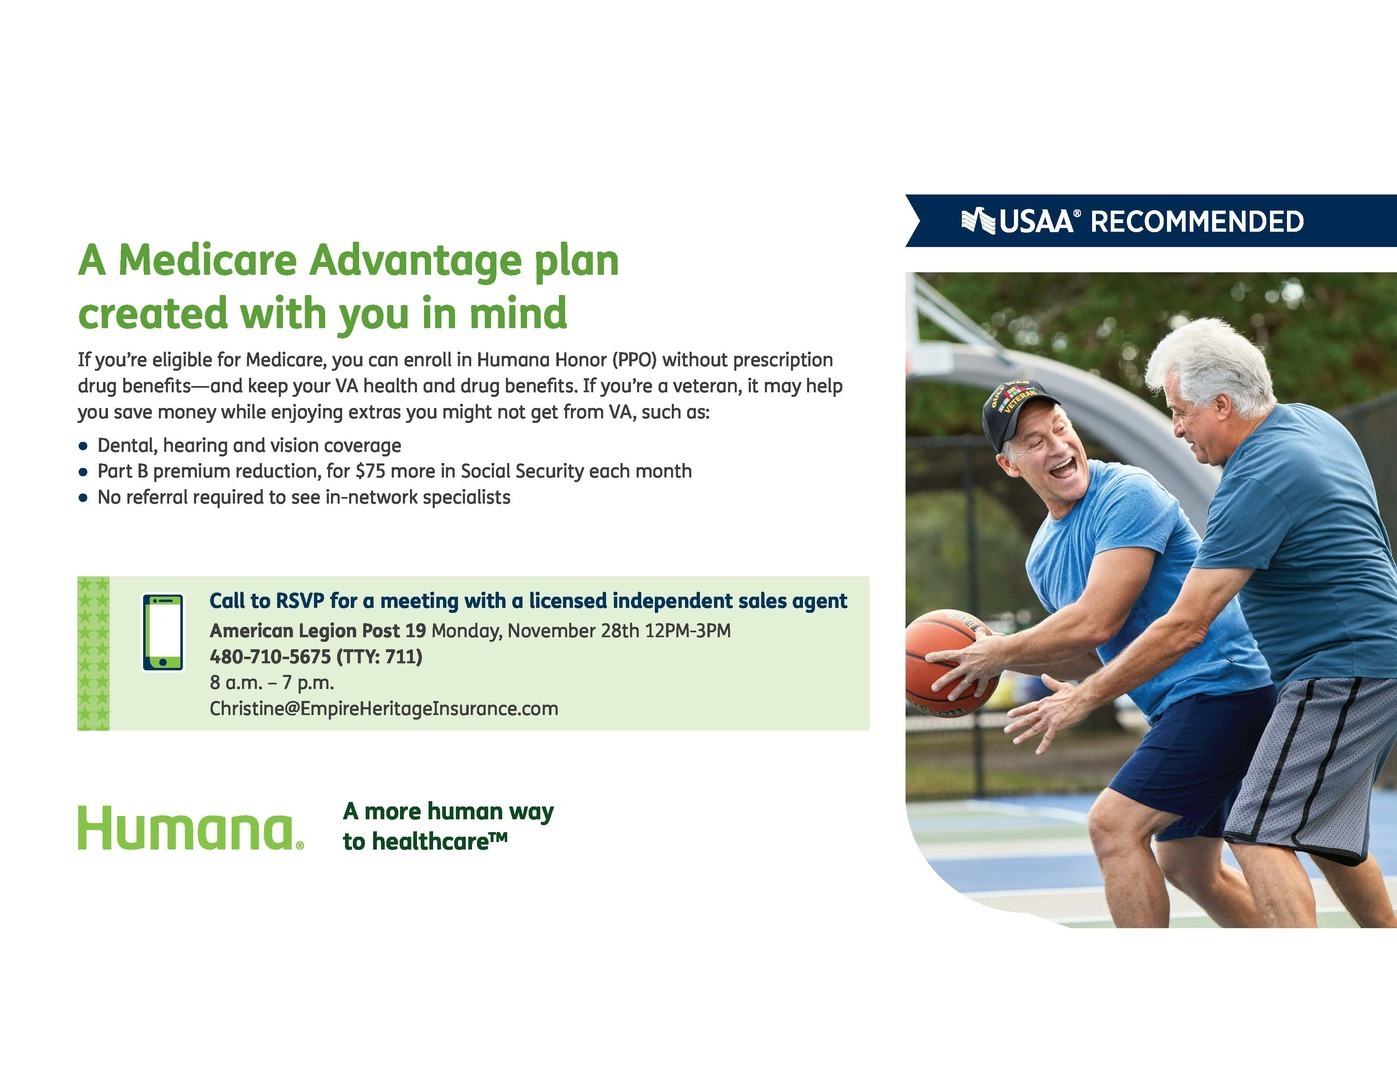 VA Clinic Alternative Care Available, Yuma, Arizona, United States